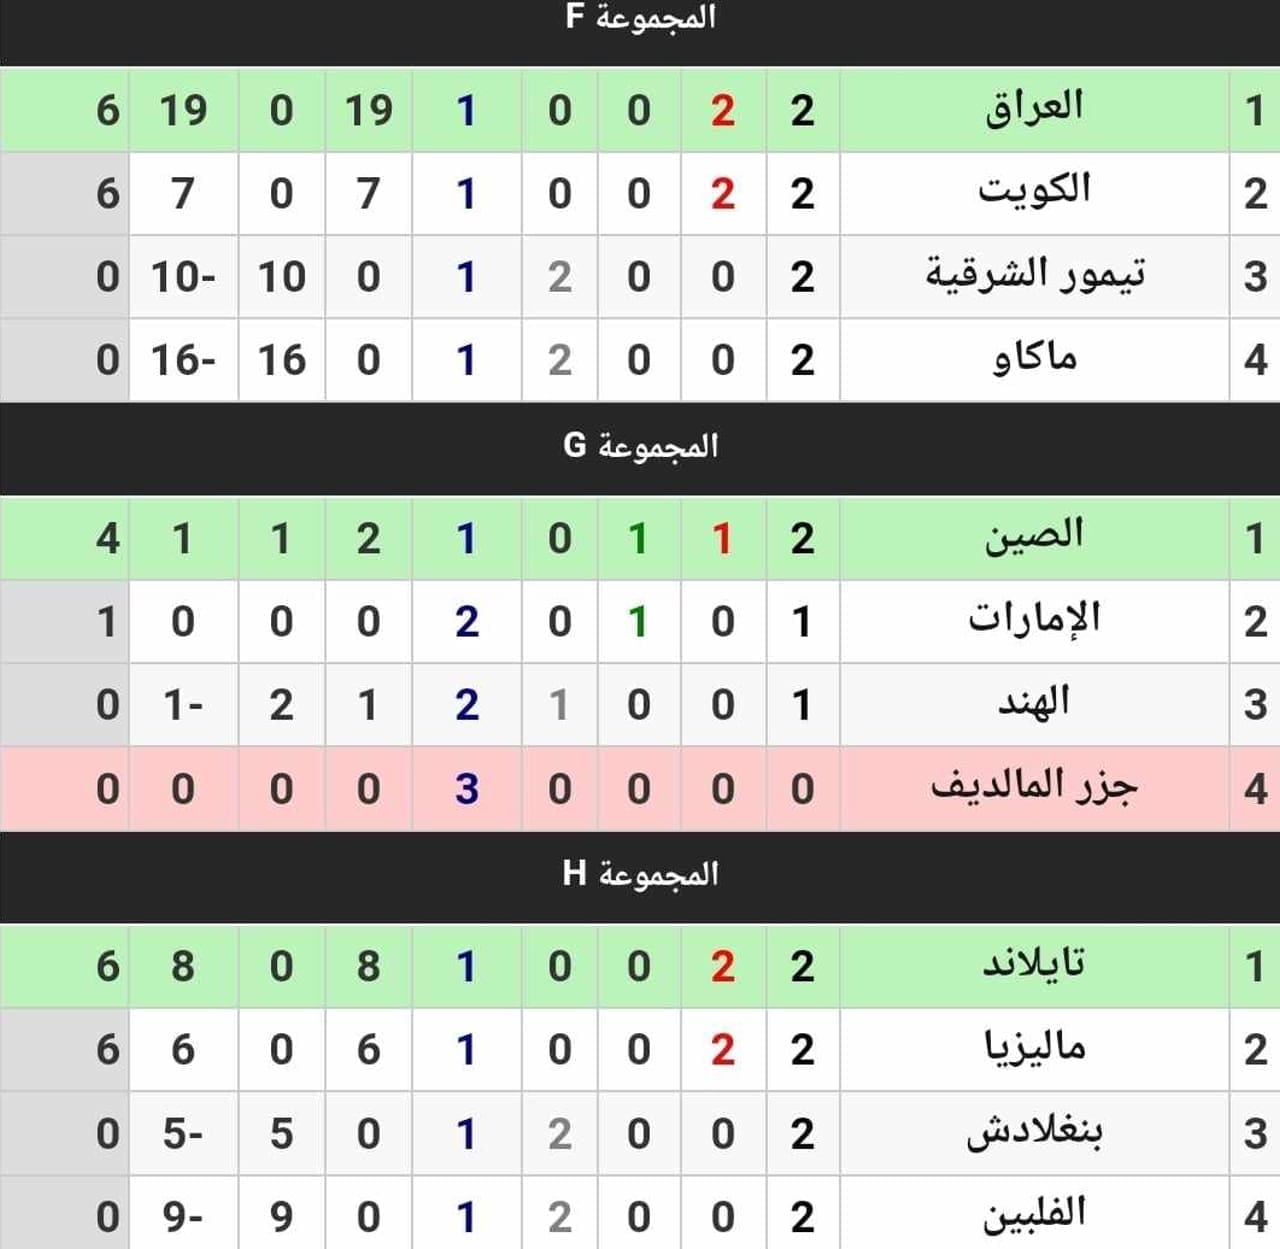 جدول ترتيب المجموعات الـ11 في تصفيات كأس آسيا تحت 23 سنة قطر 2024 بعد نهاية الجولة الثانية (مصدر الصورة. موقع كووورة)